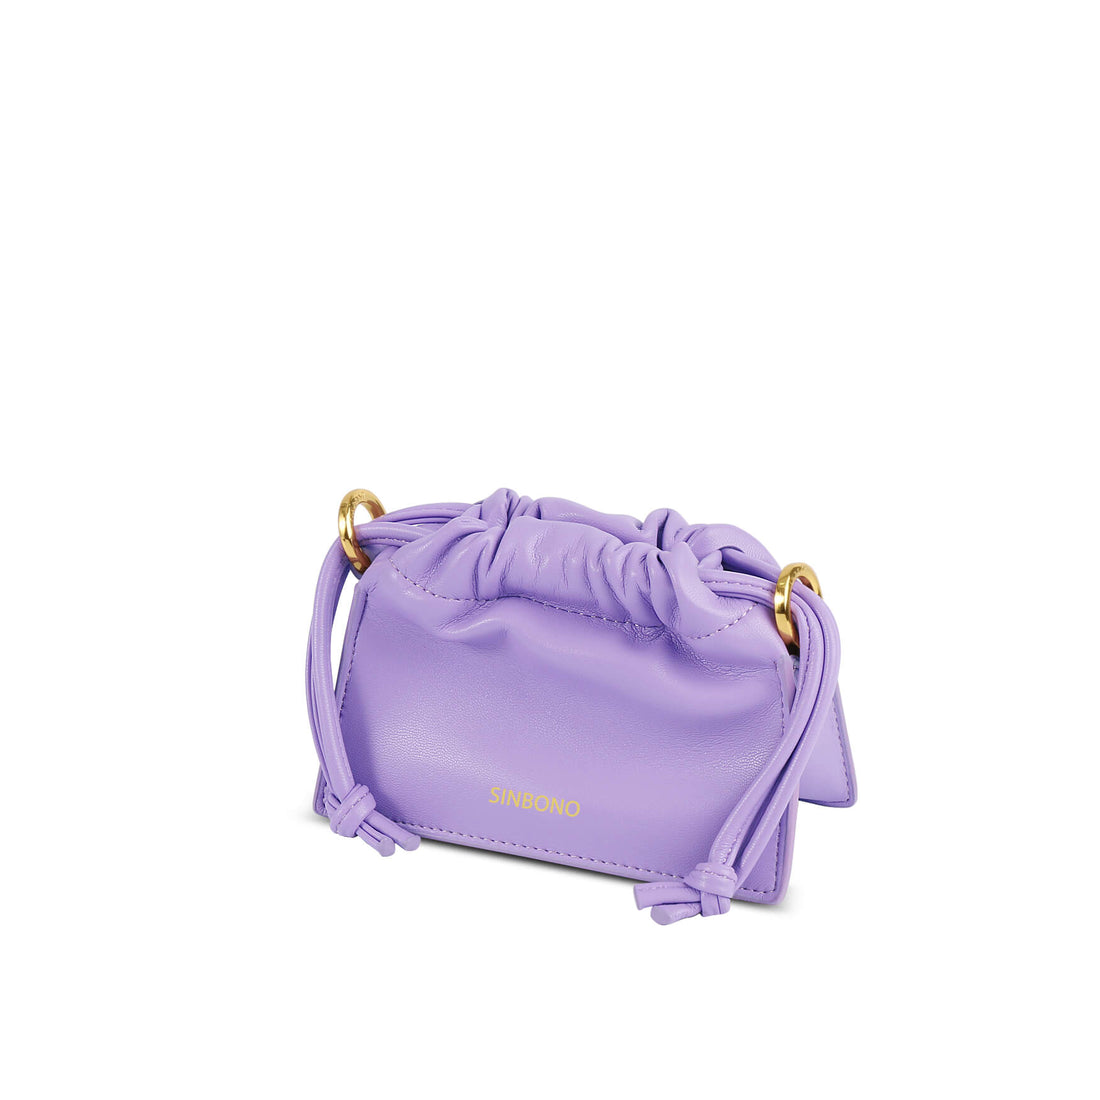 SINBONO Mini Drawstring Vegan Handbags Purple